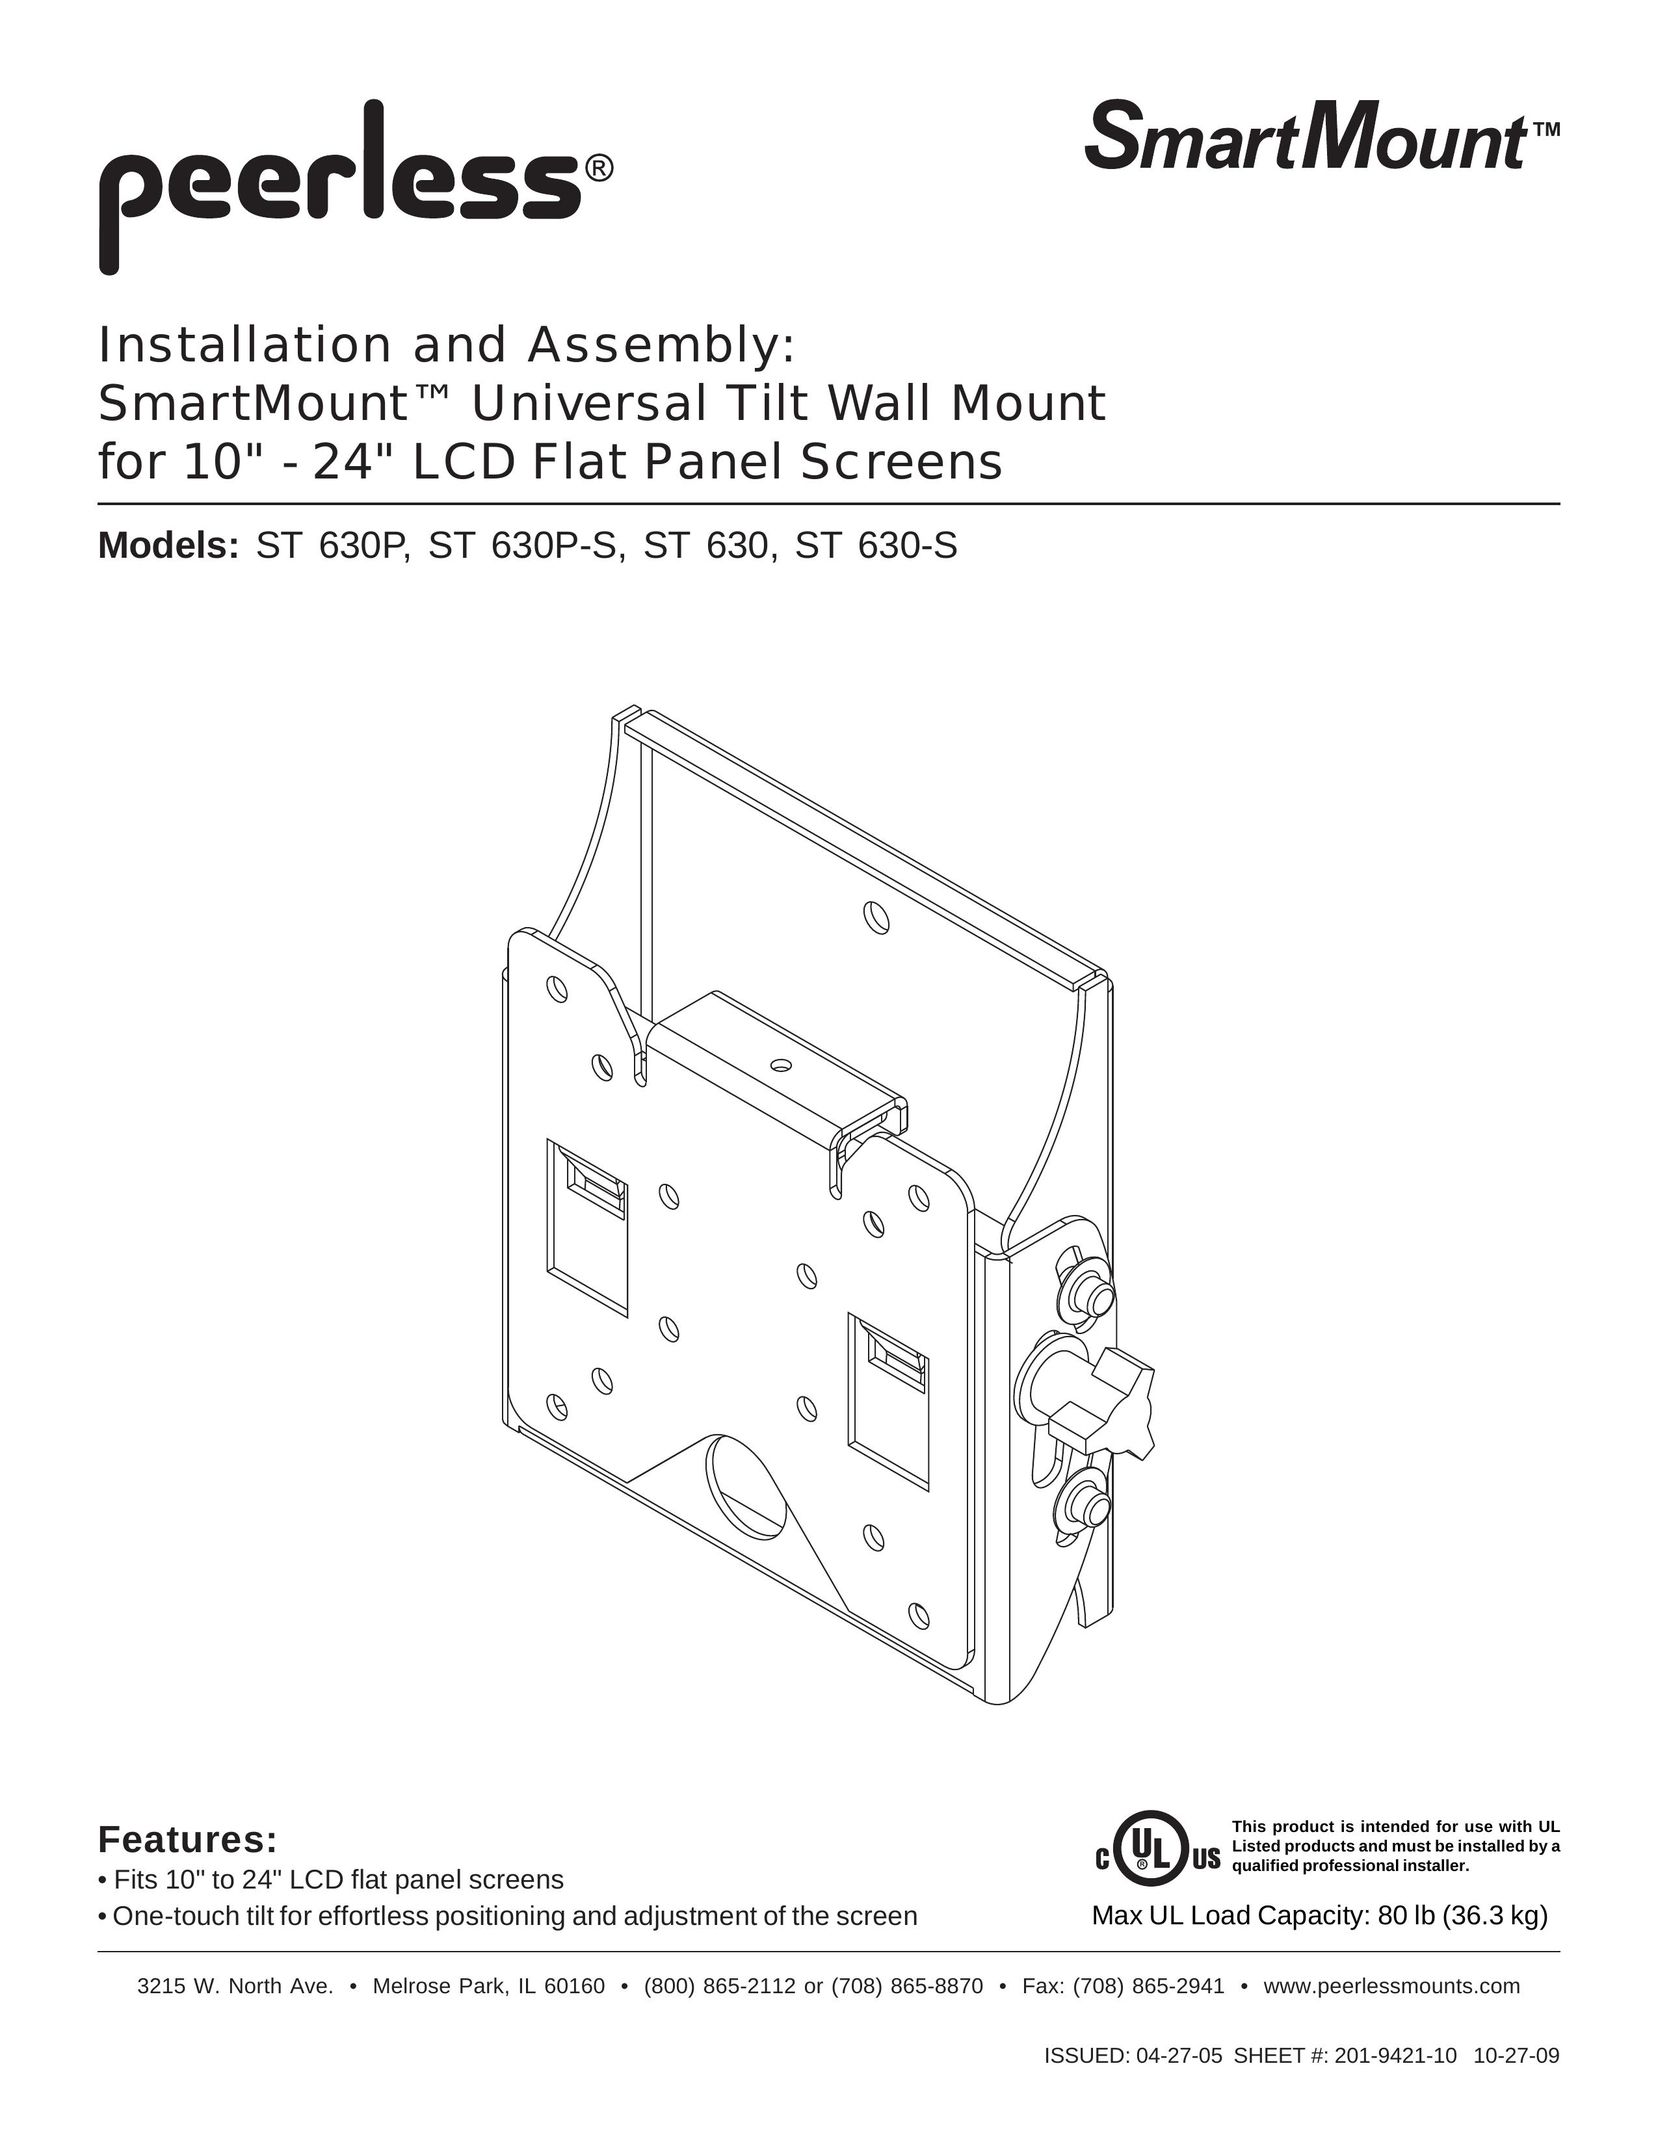 Peerless Industries ST630P-S Indoor Furnishings User Manual